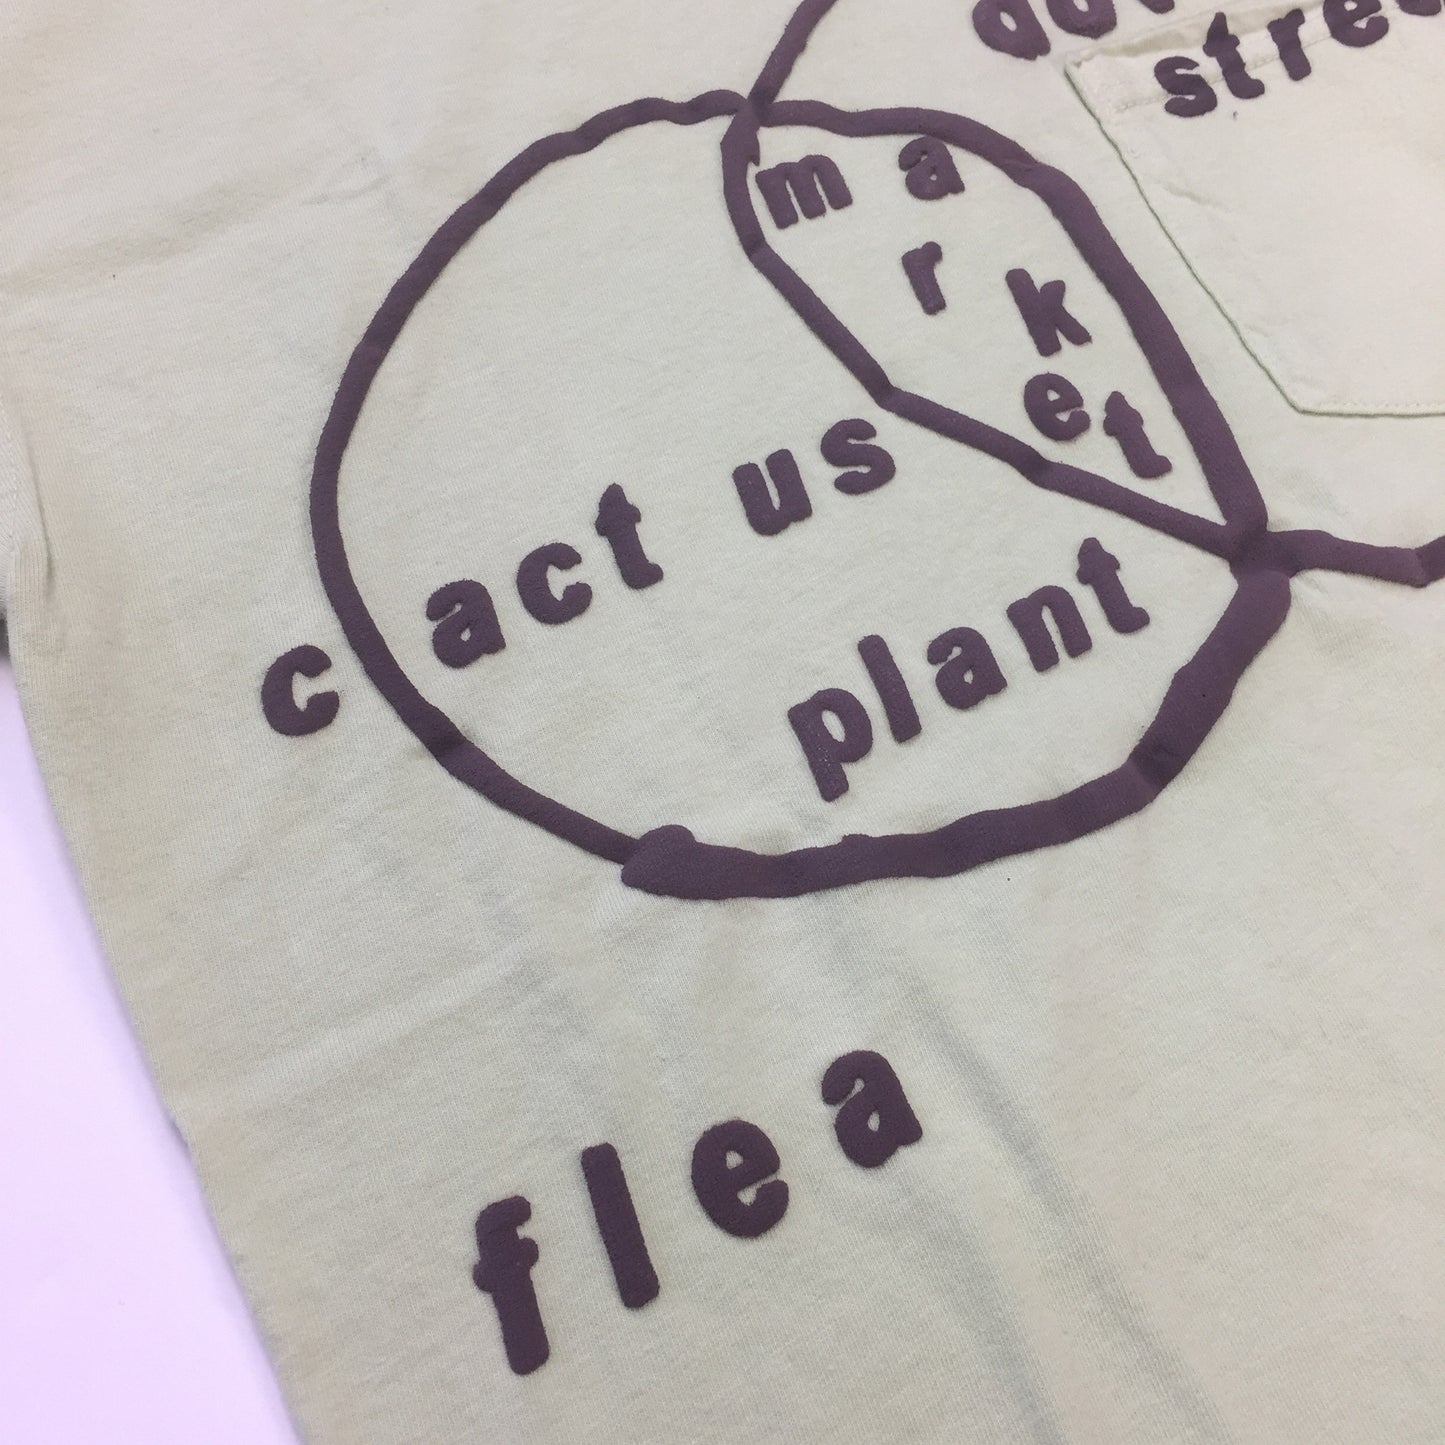 Cactus Plant Flea Market x DSM - Sage 'Connectivity' T-Shirt